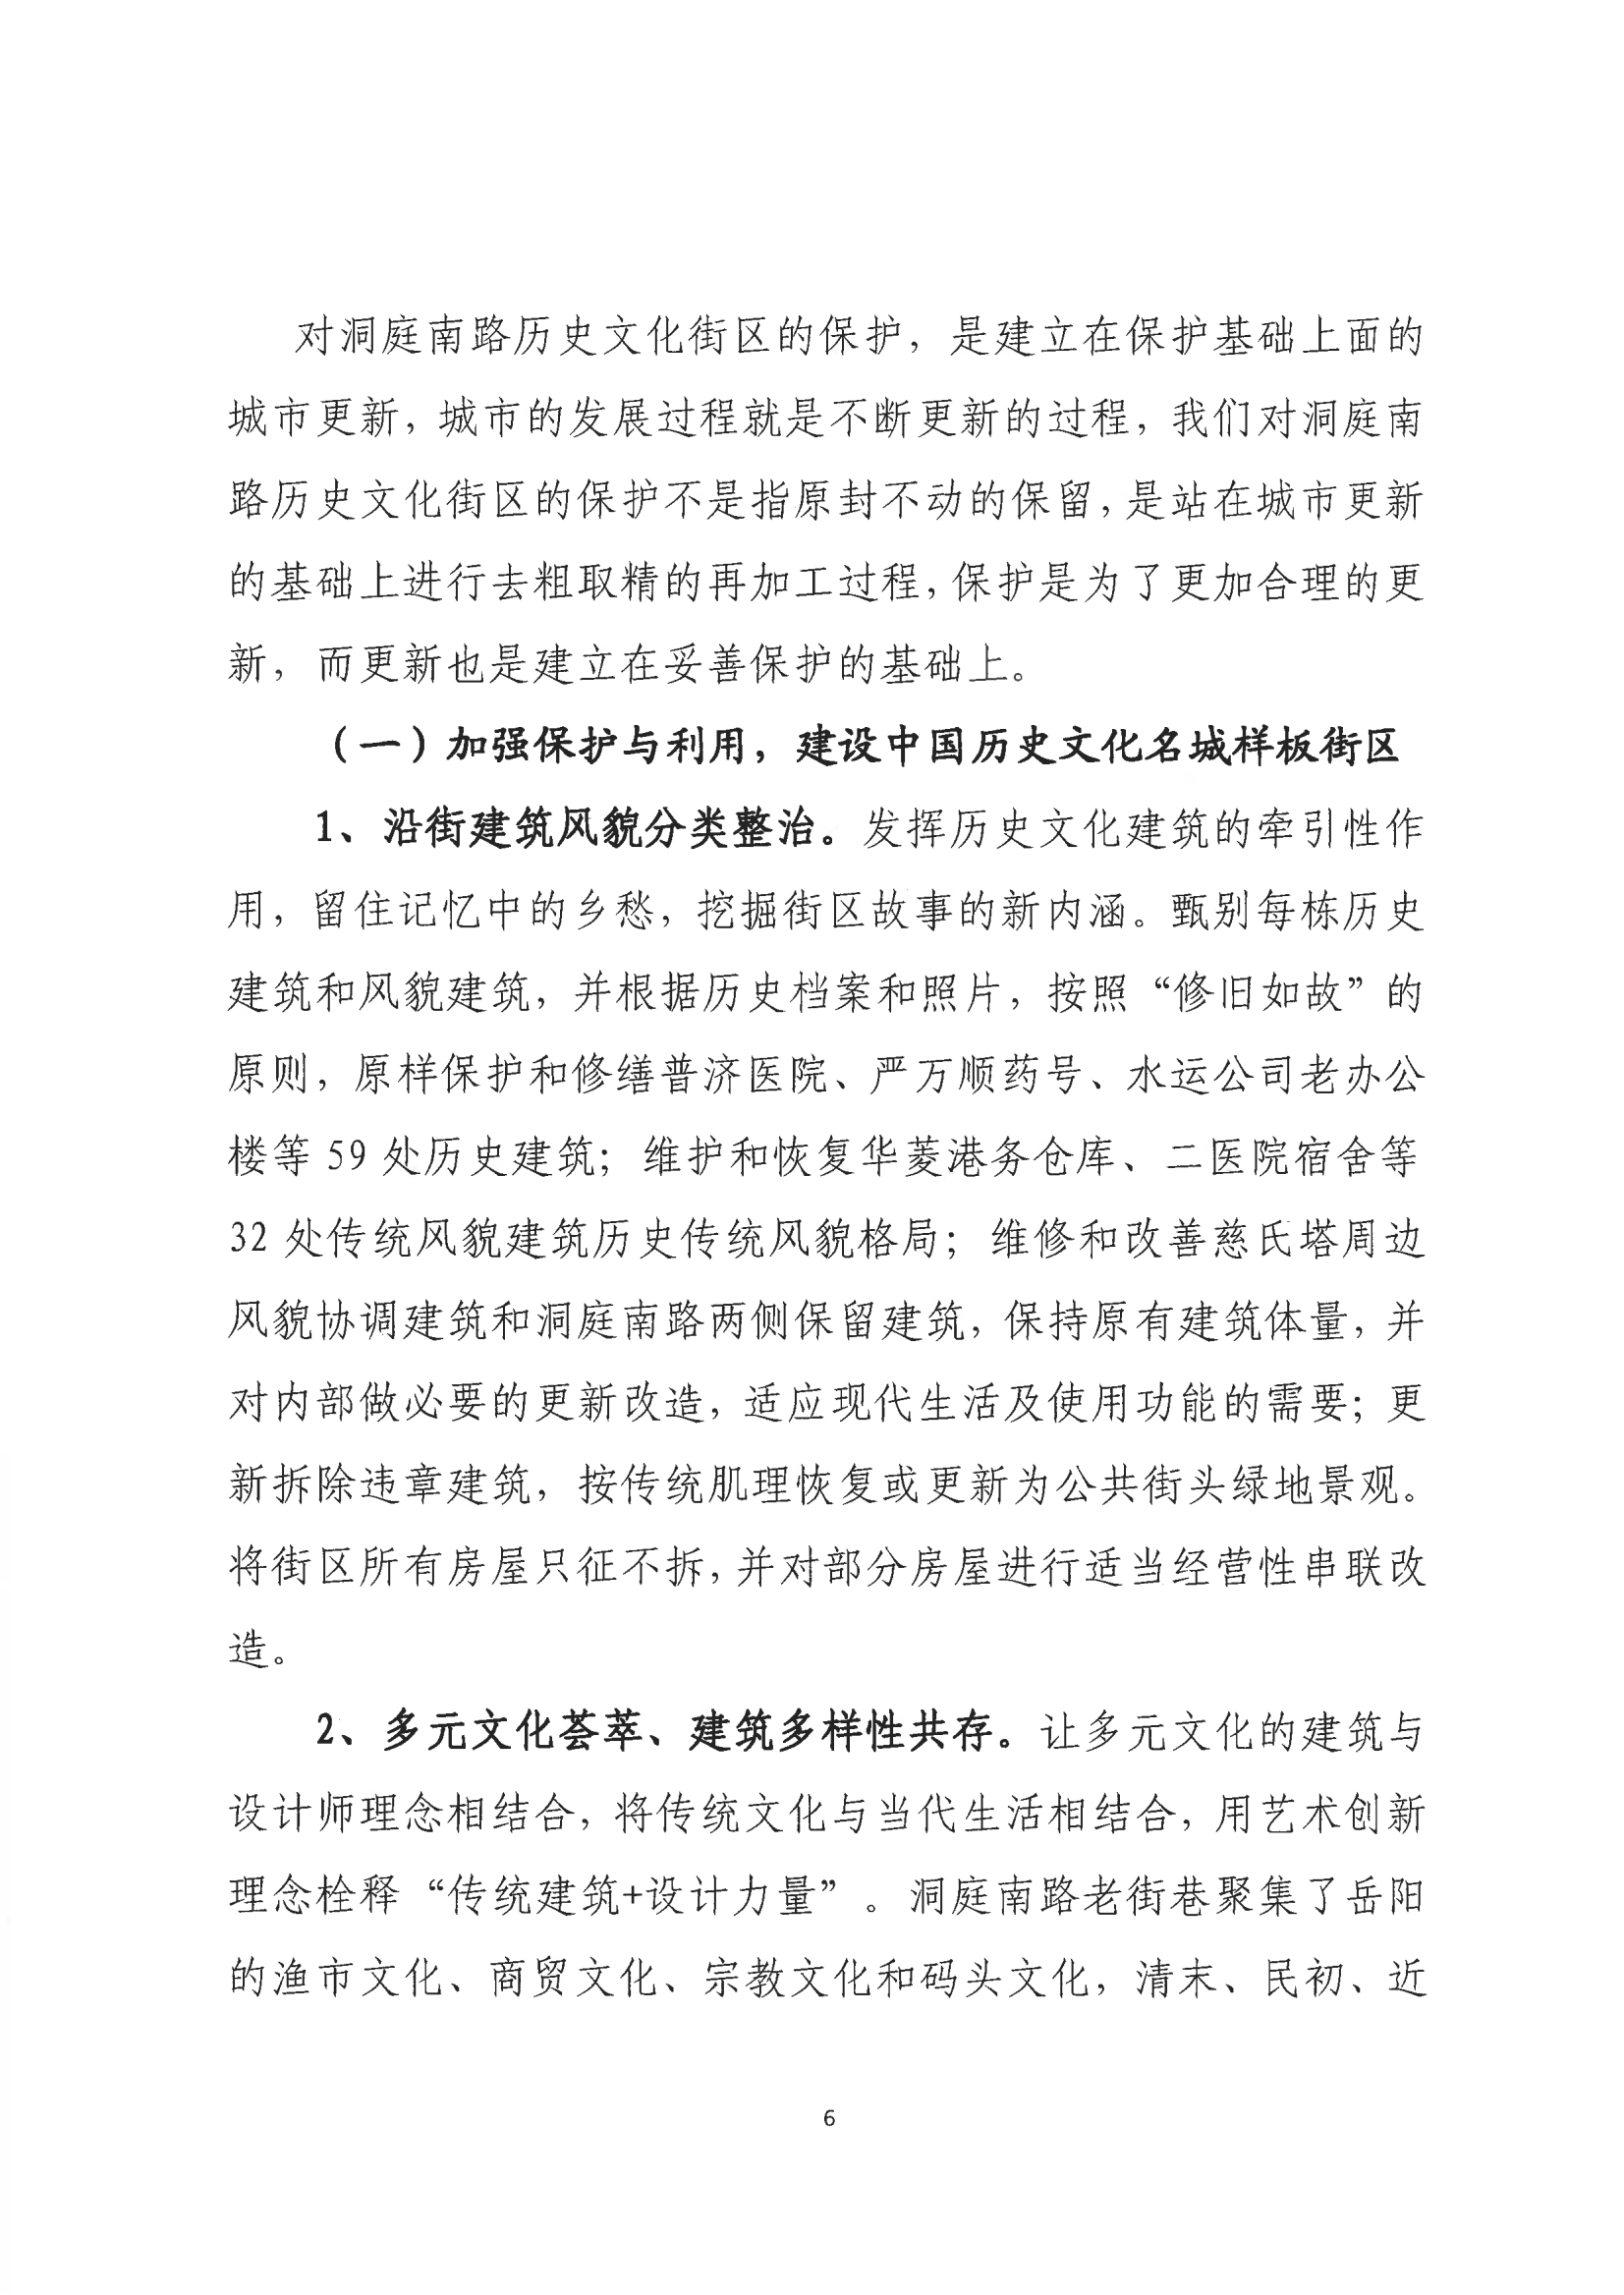 001号提案关于岳阳市政协九届一次会议第001号提案的回复(1)_05.png